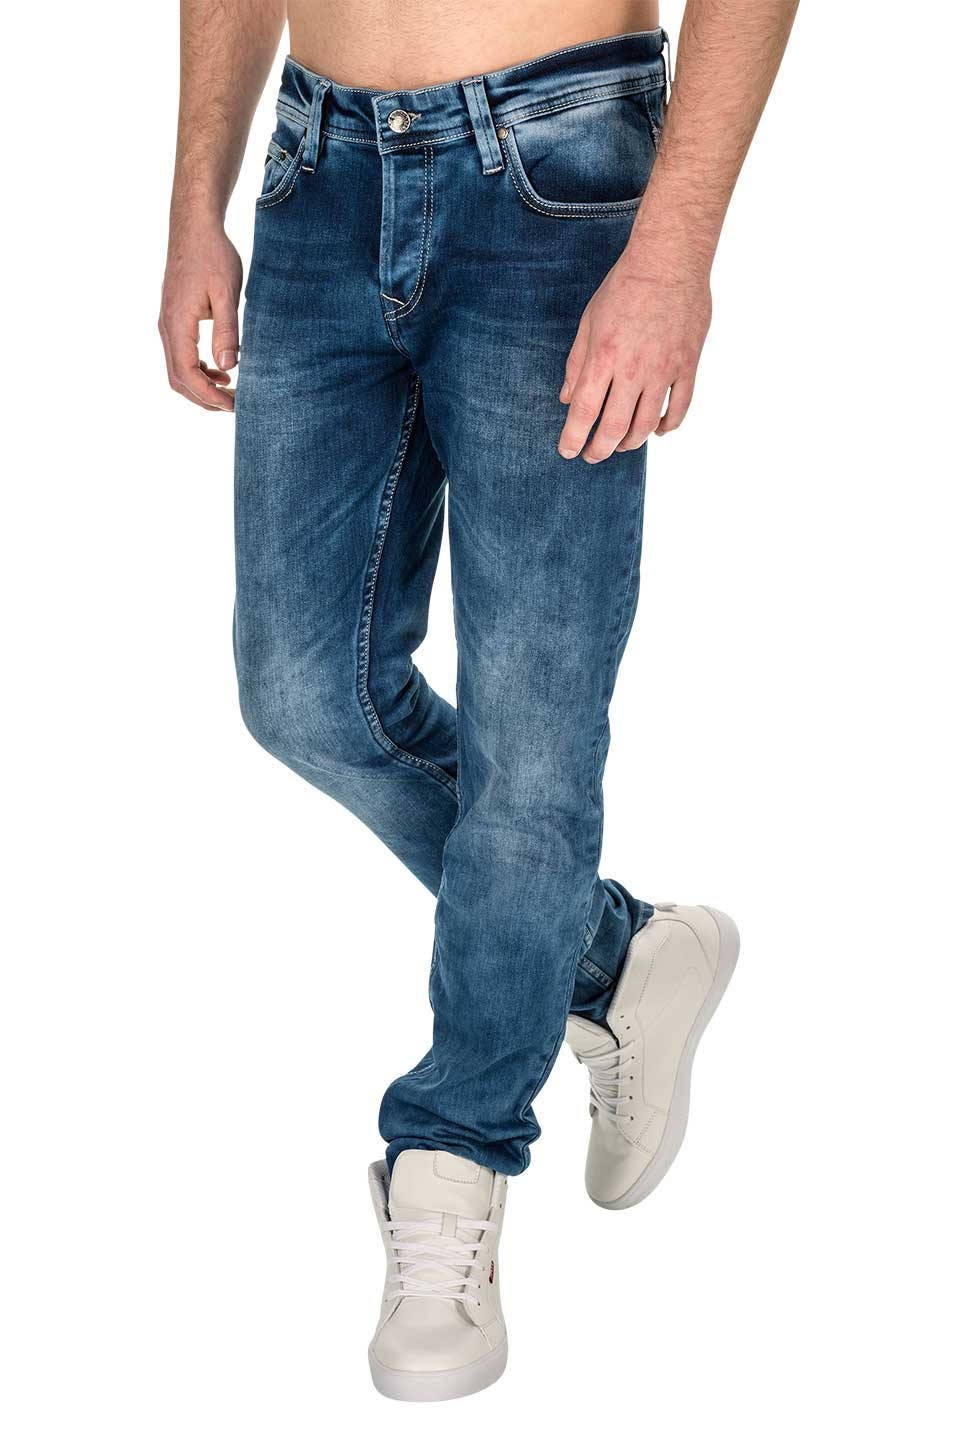 width 32 jeans